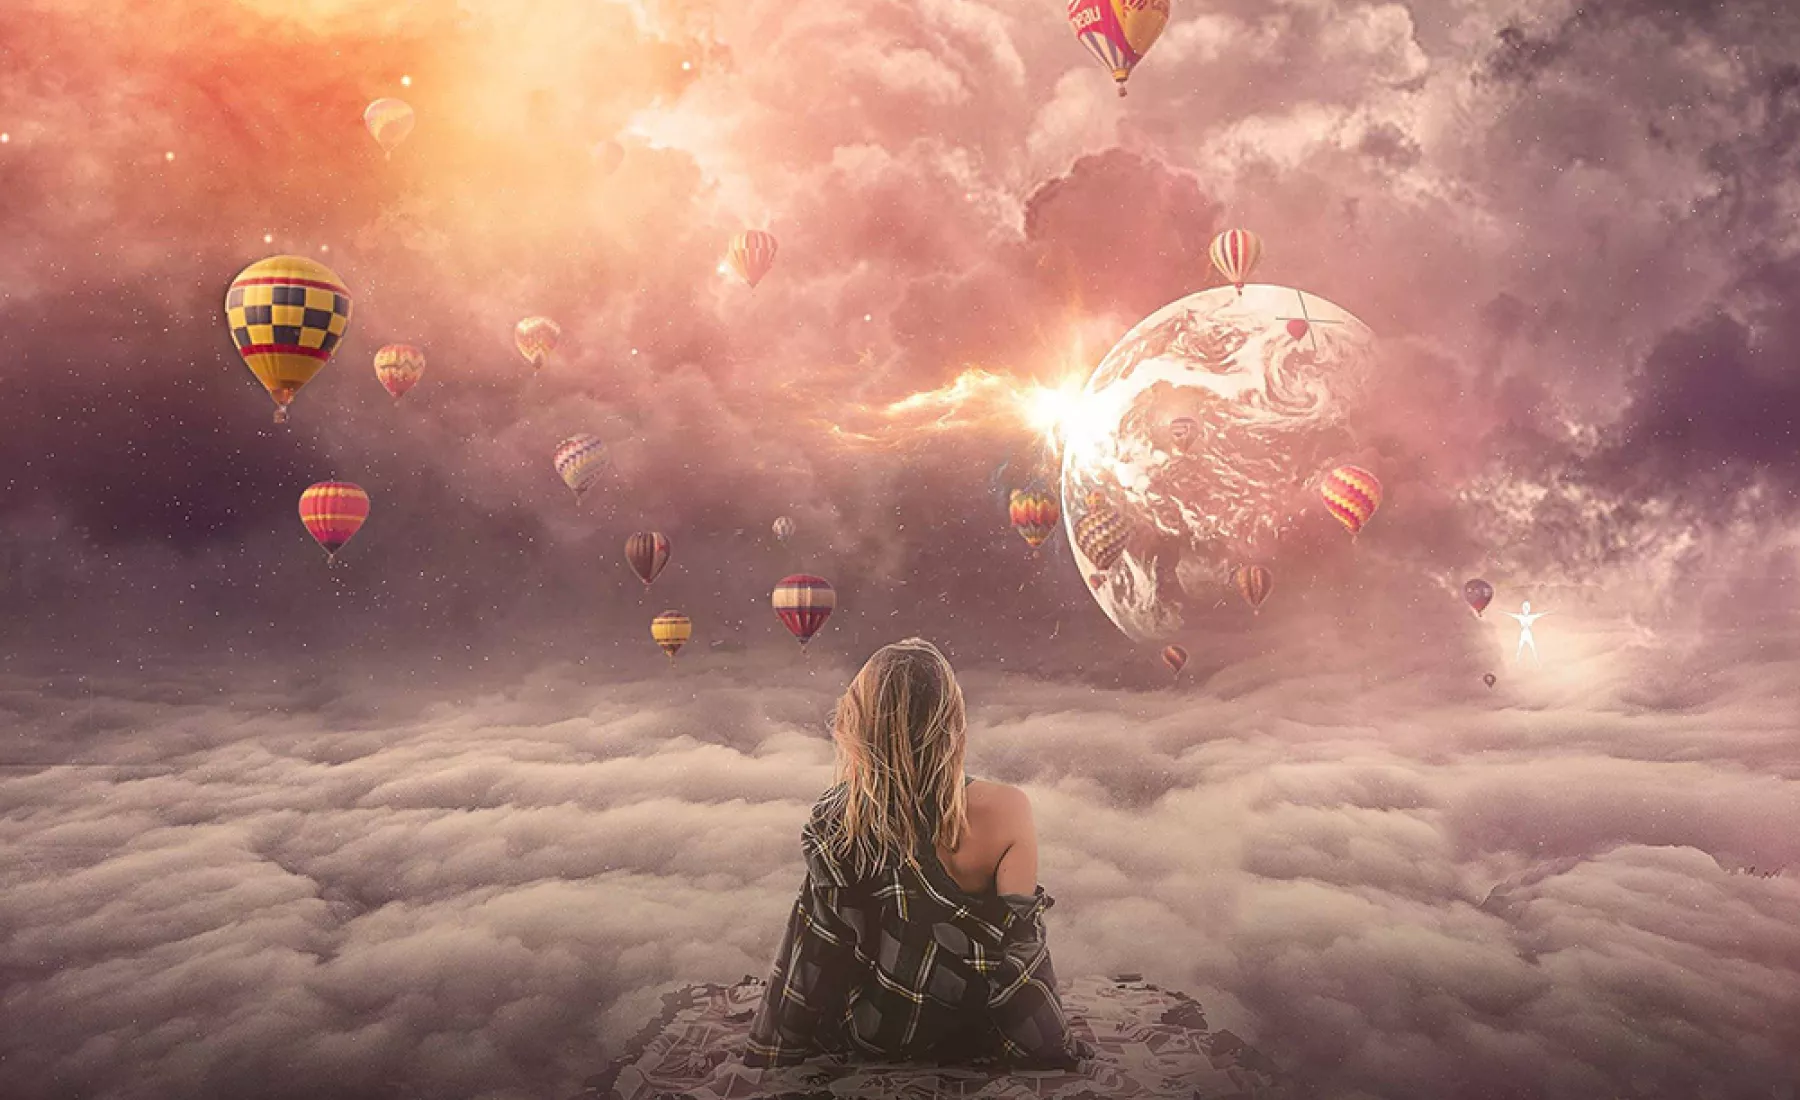 Frau sitzt im Himmel schwebend, Heißluftballons um sie herum, die Erde in der Ferne